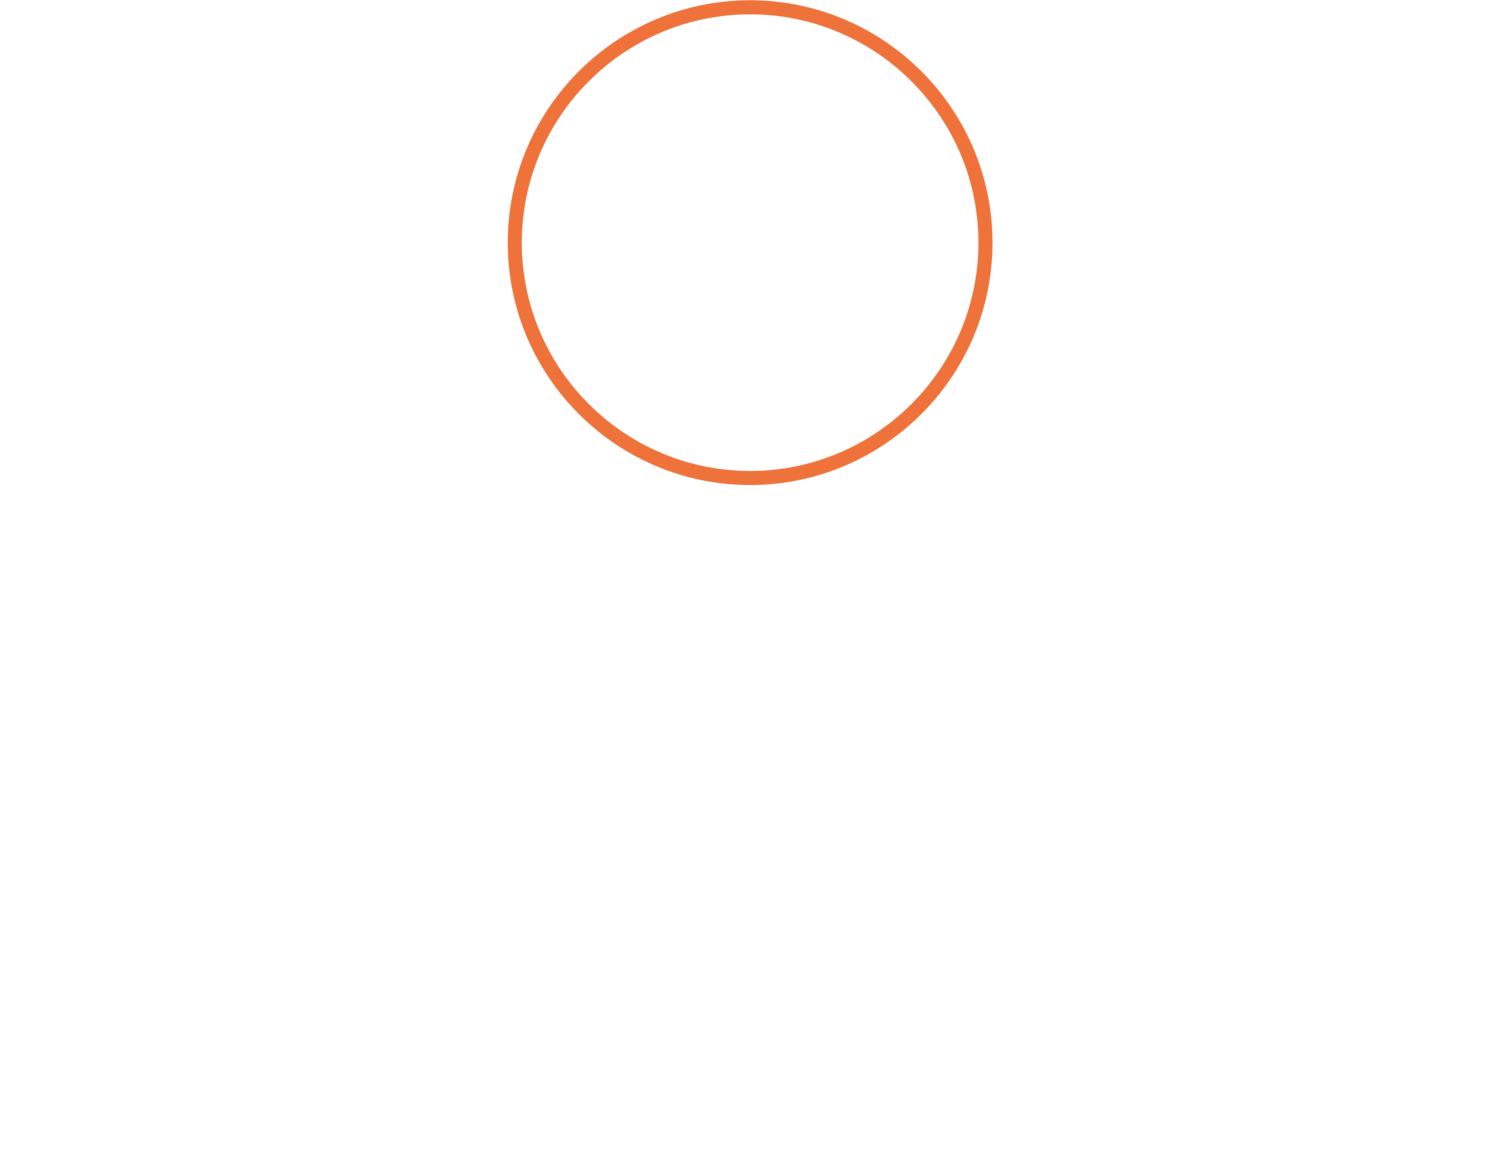 McLaren Capital